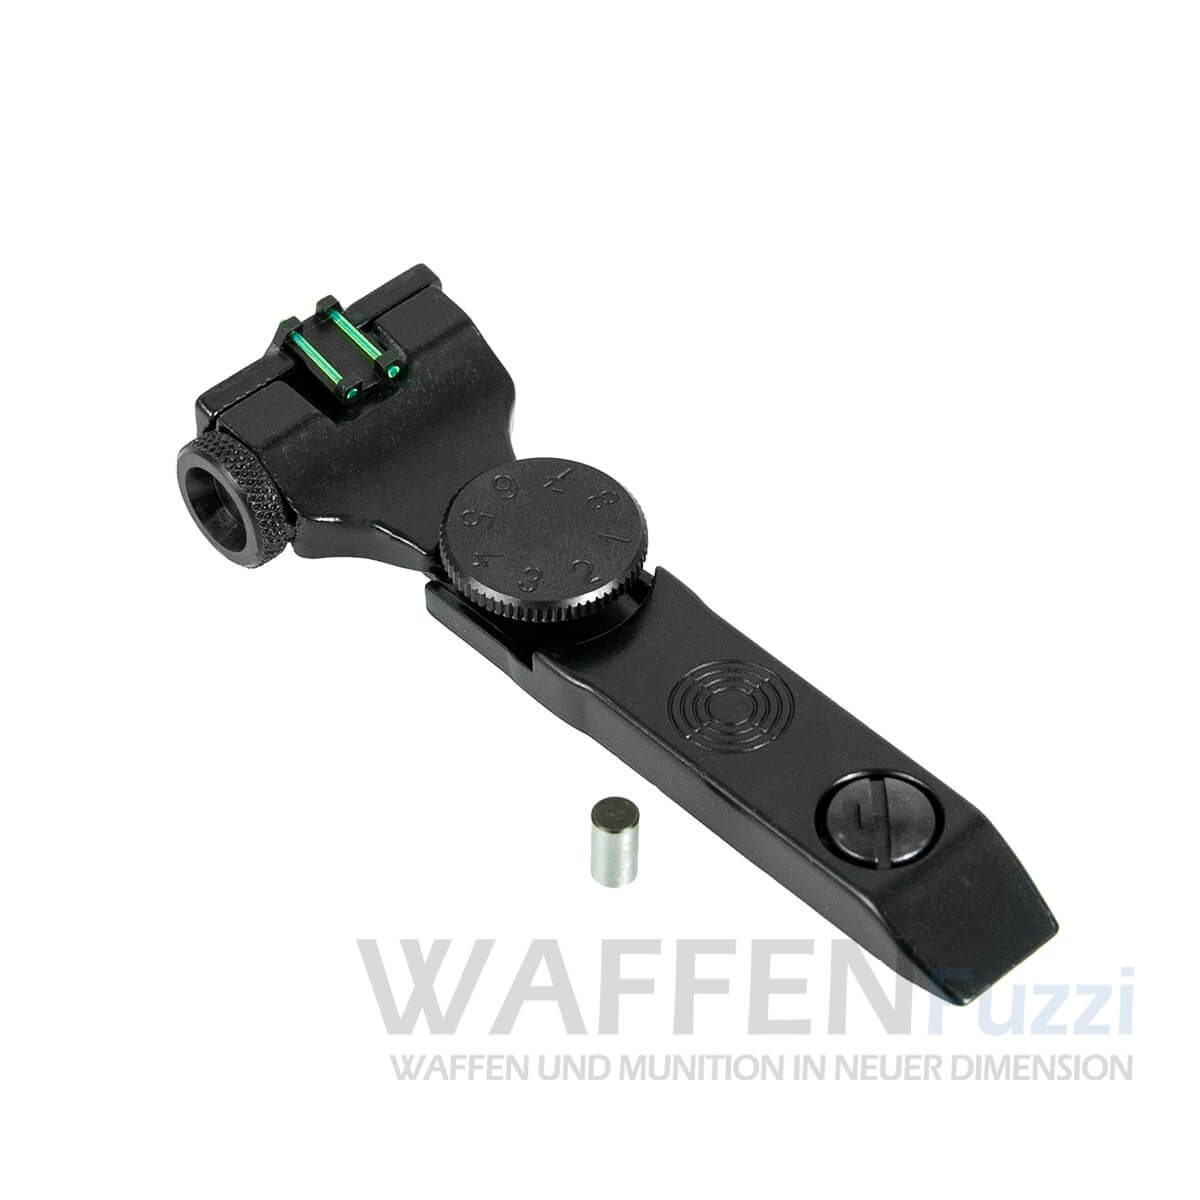 Fiber-Optik Mikrometervisier für Weihrauch Luftgewehre